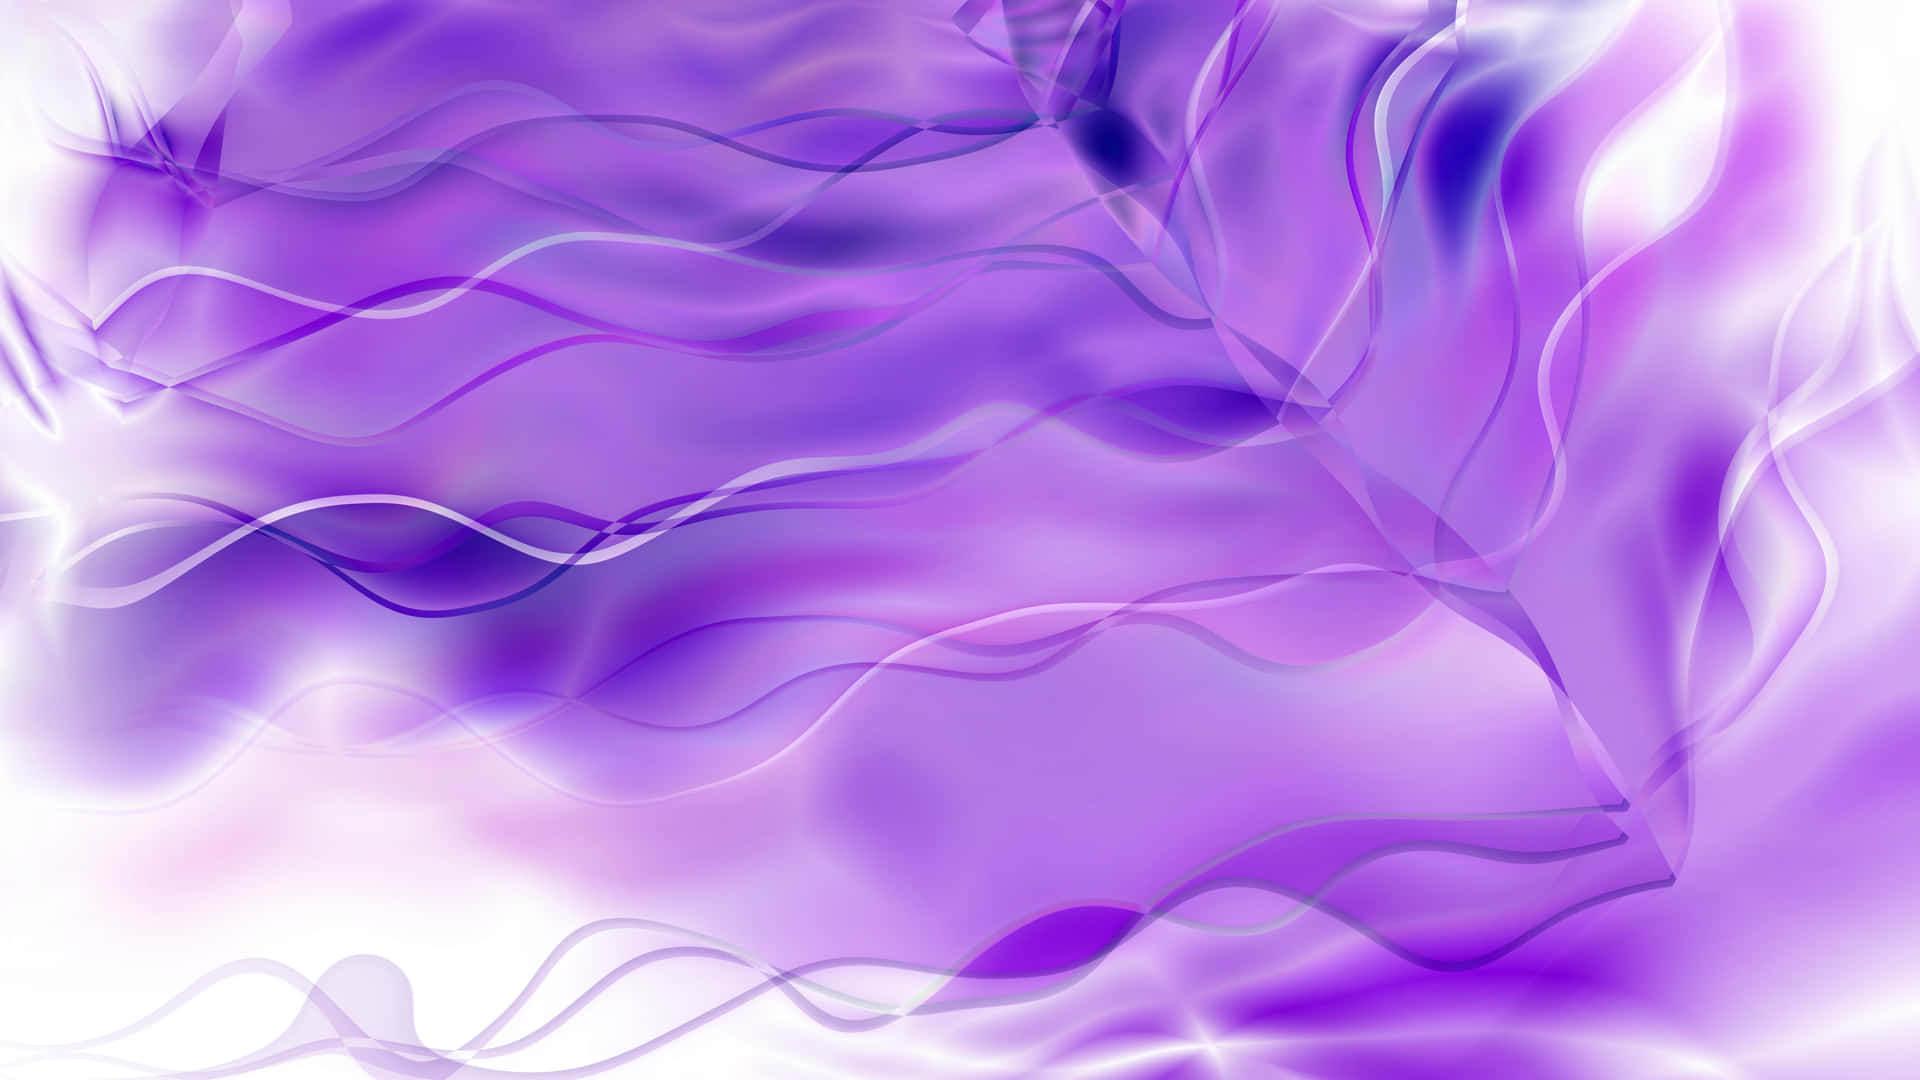 A vibrant image of purple smoke spiraling upward